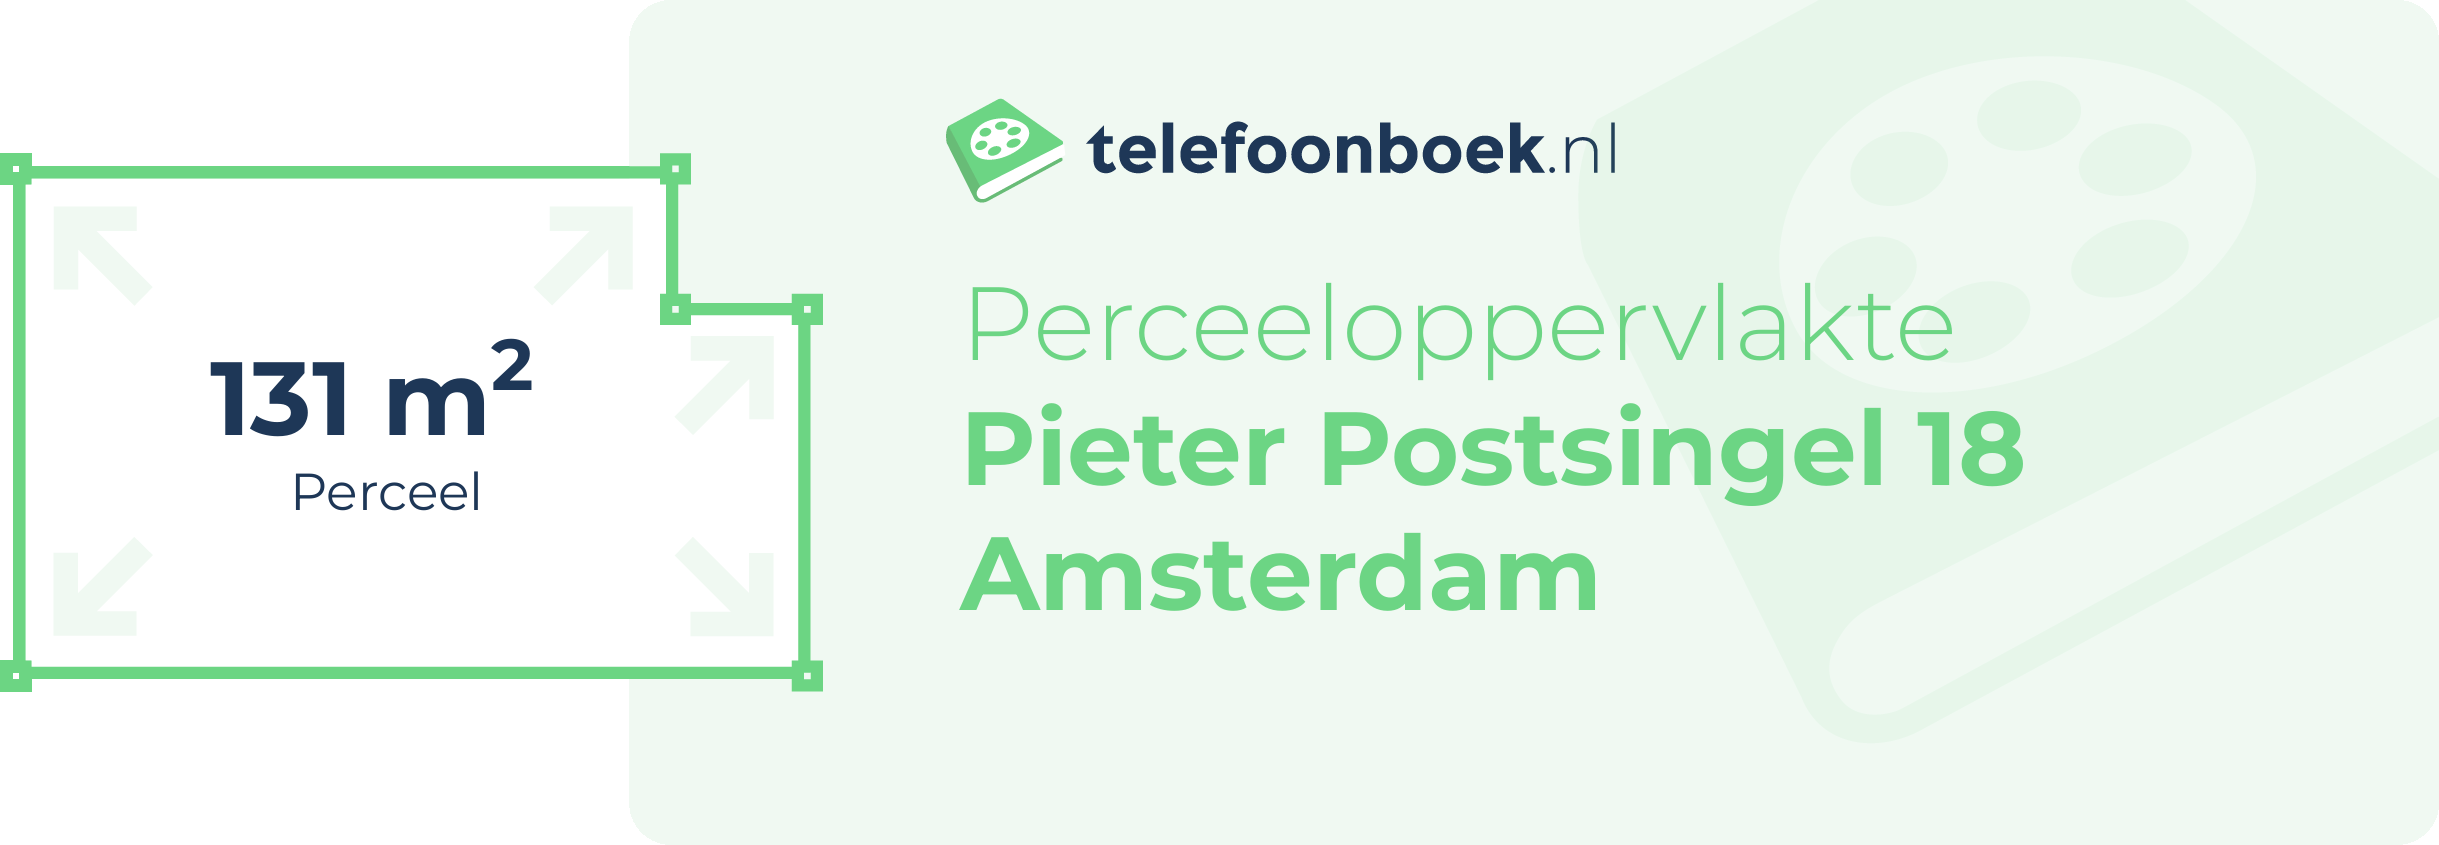 Perceeloppervlakte Pieter Postsingel 18 Amsterdam